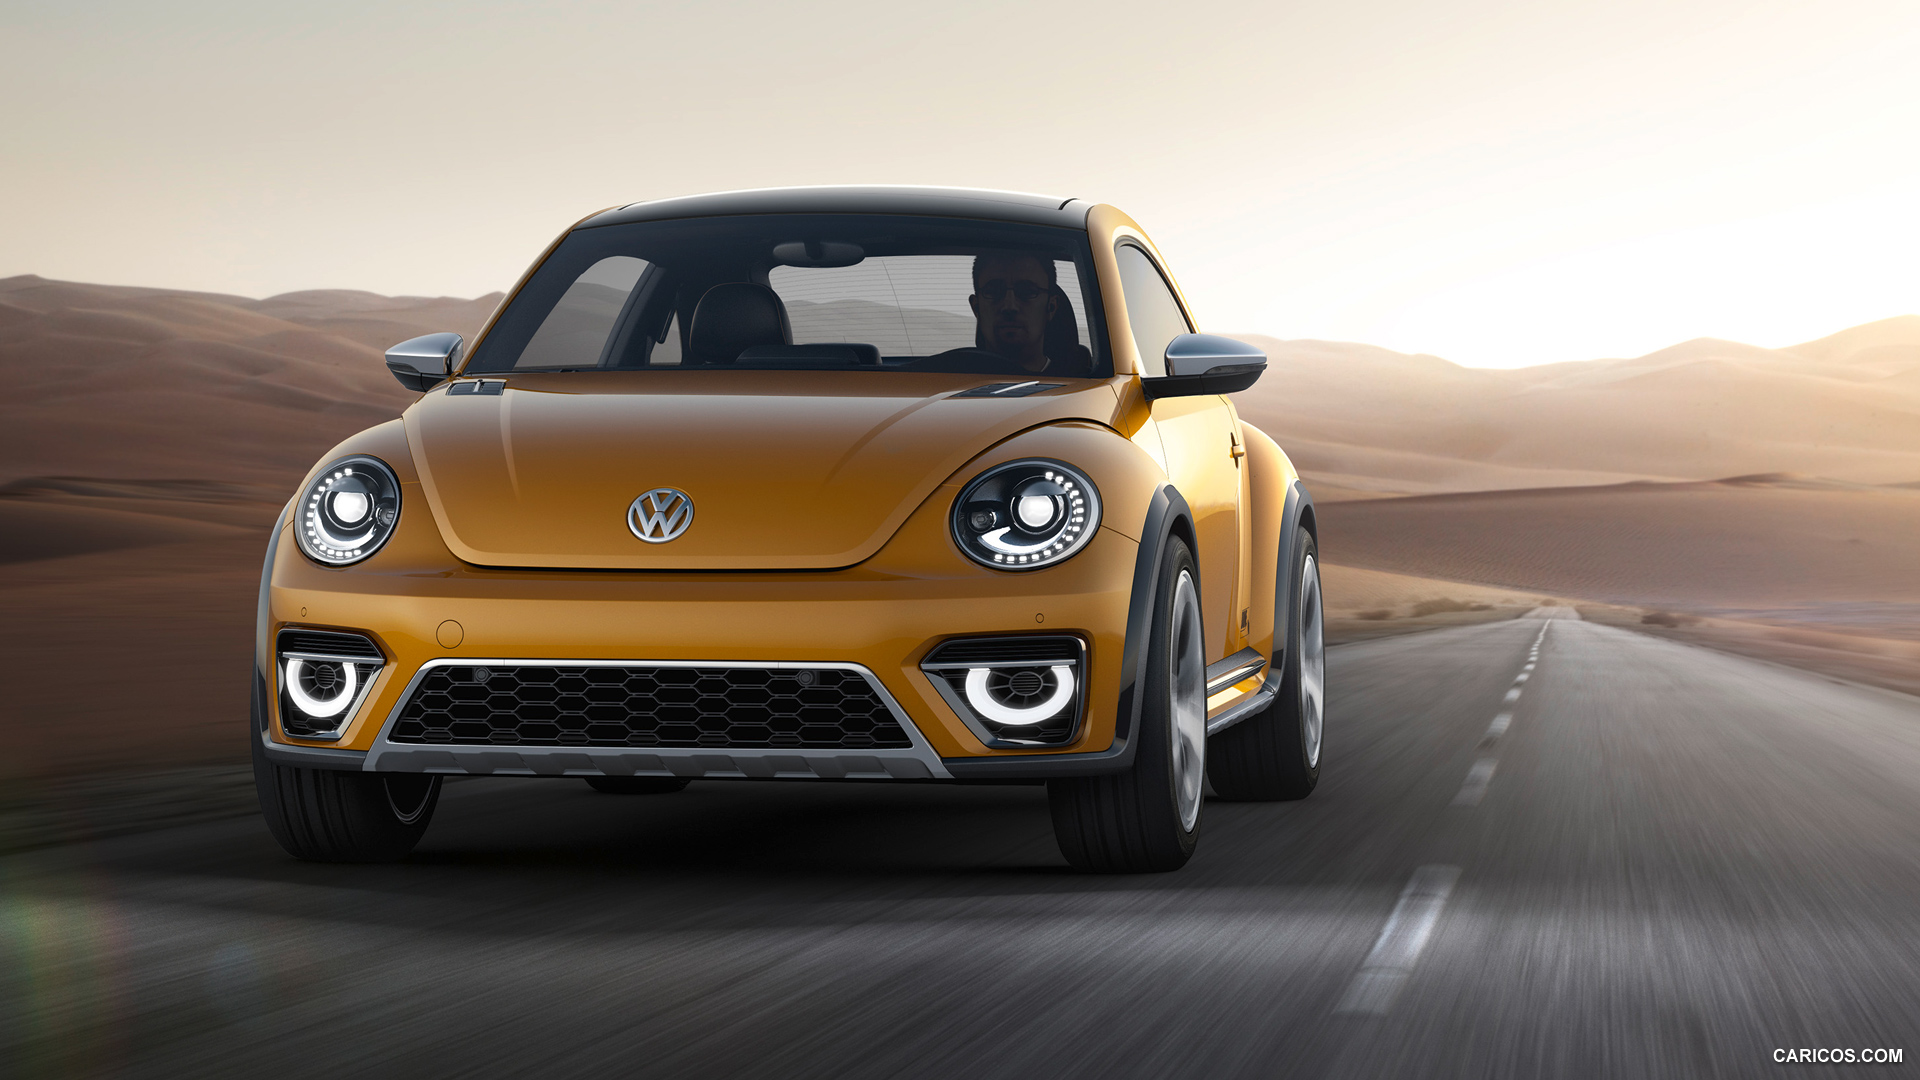 Amazing 2014 Volkswagen Beetle Dune Concept Pictures & Backgrounds